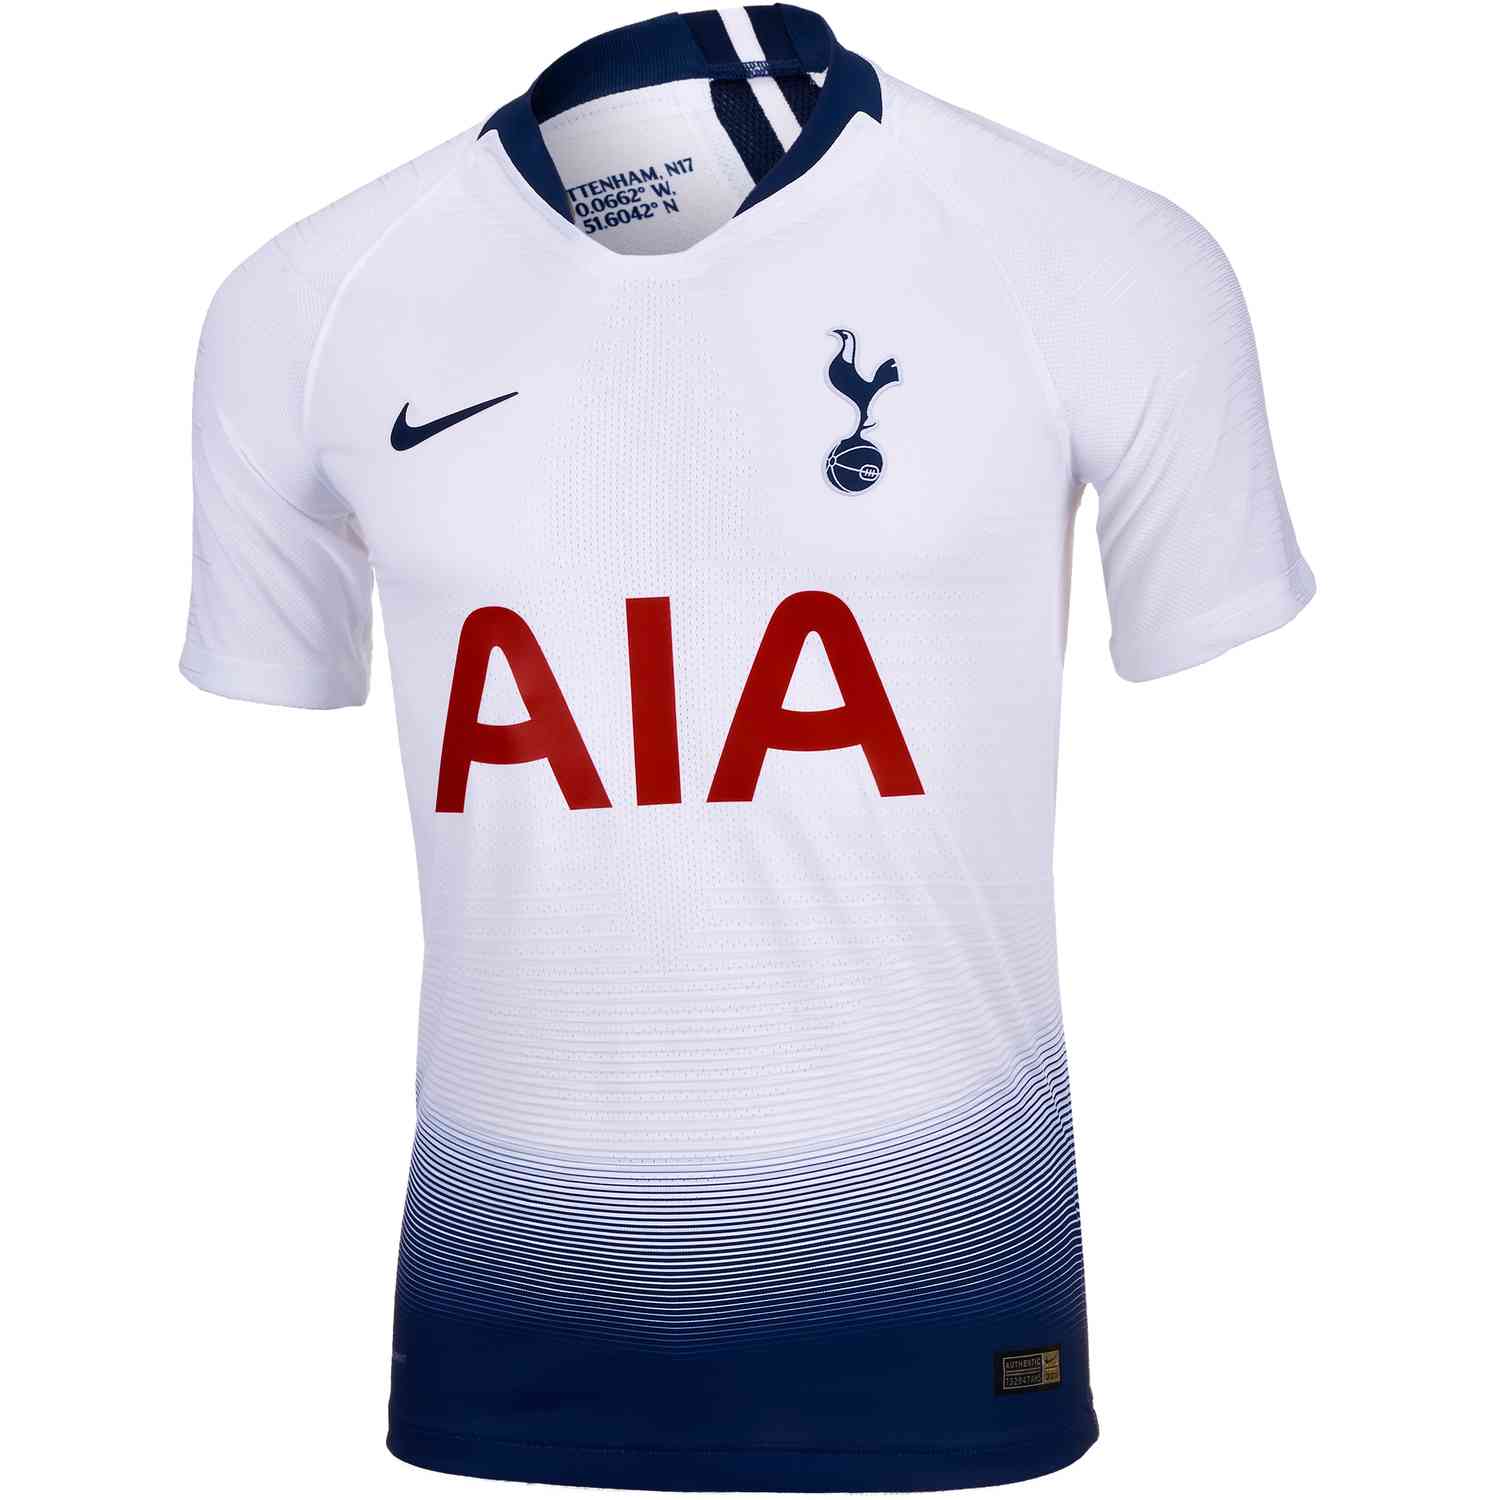 Nike Original Nike football shirt Tottenham Hotspur 2018/19